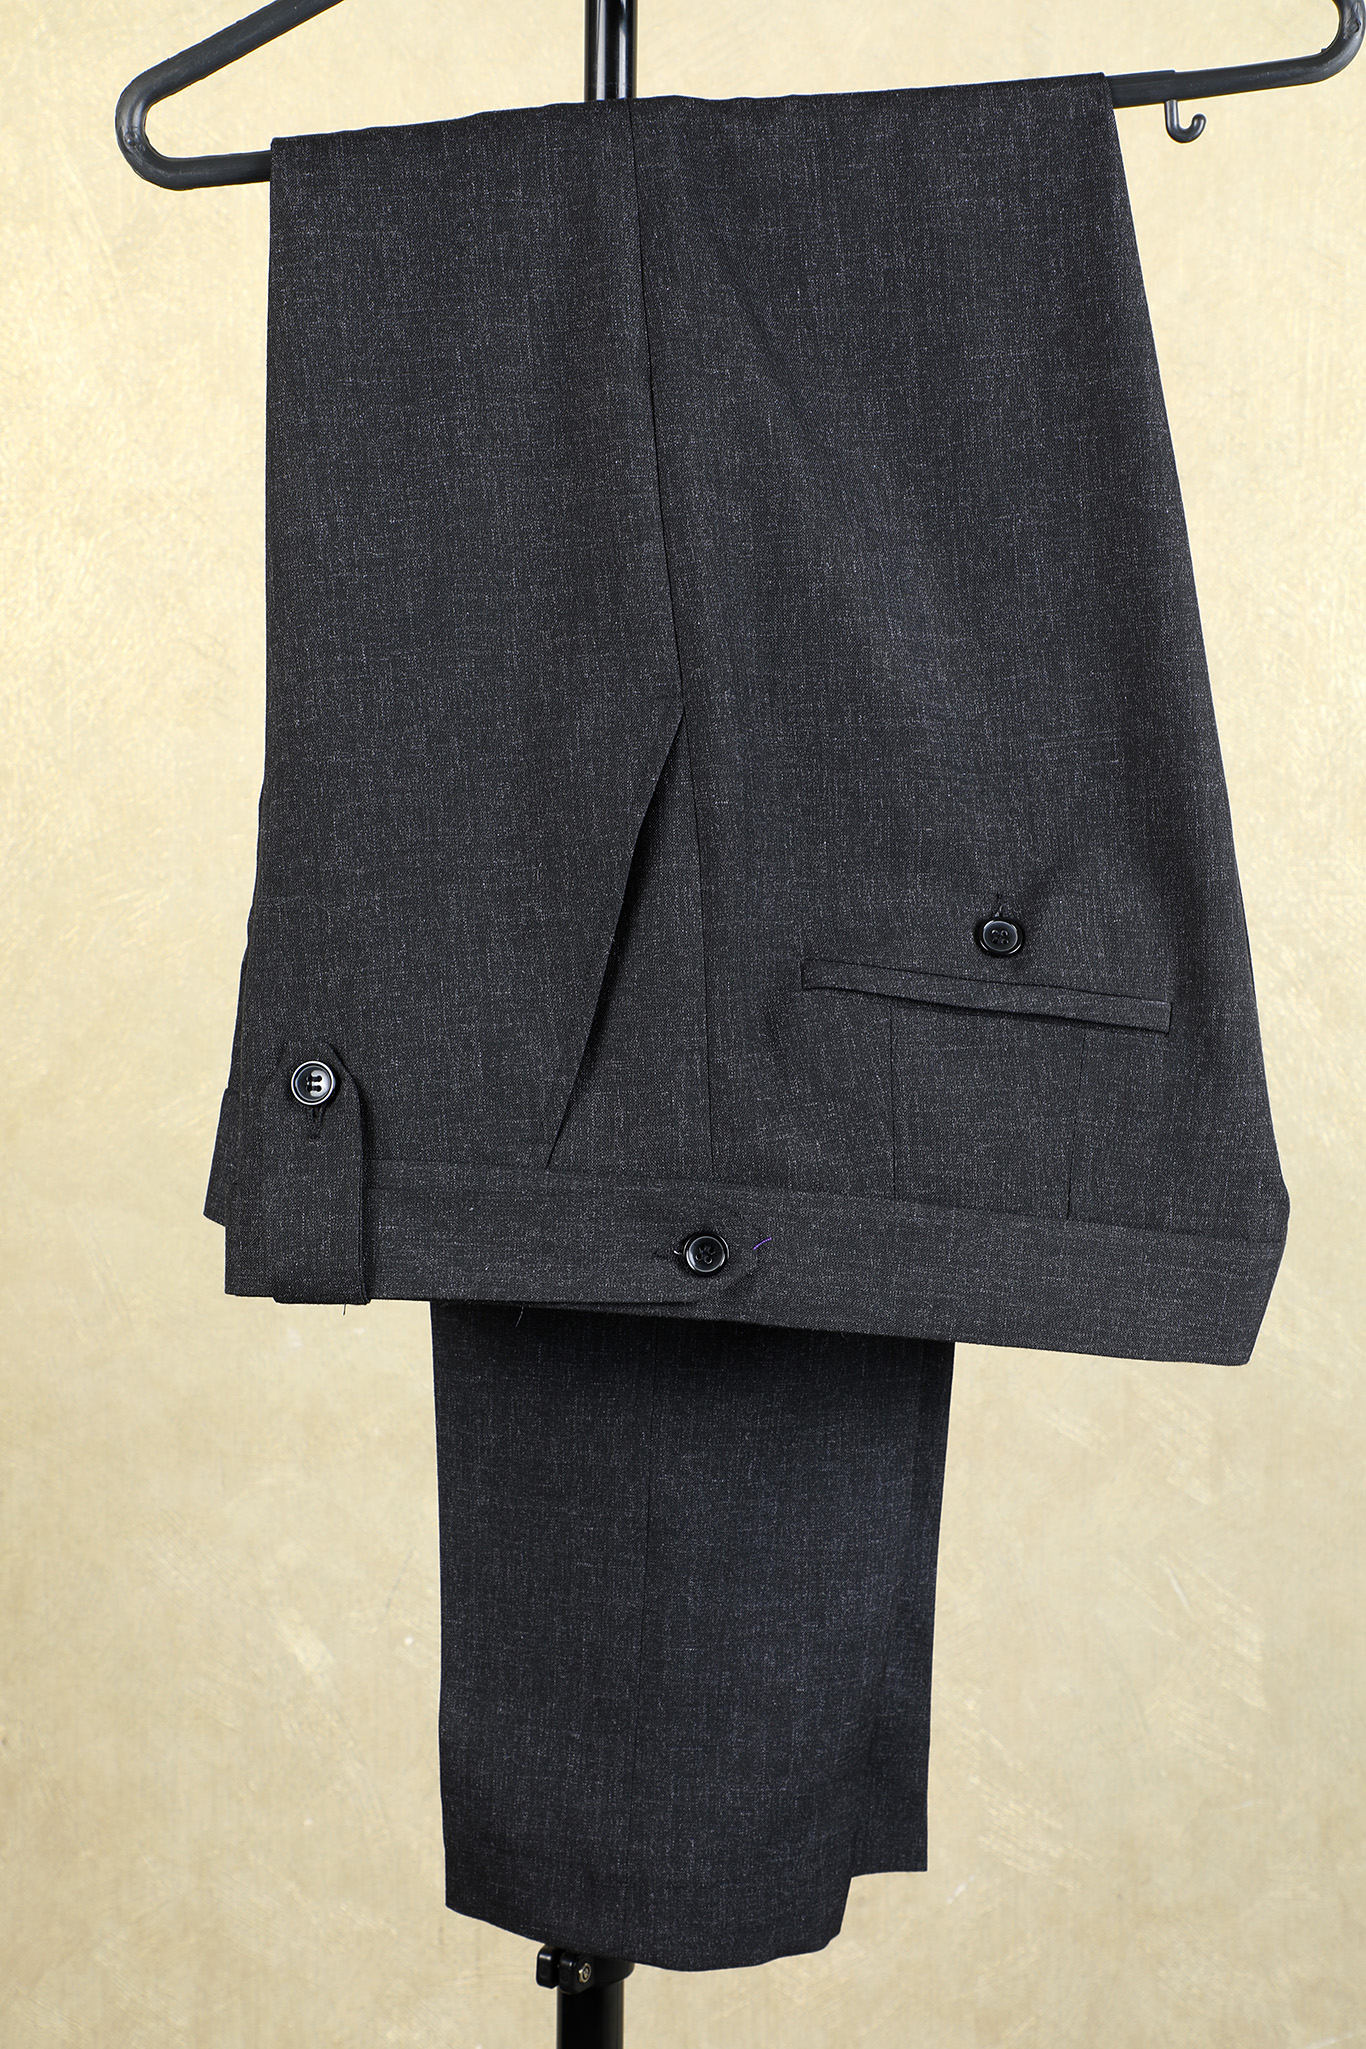 charcoal grey formal trousers for men in Nairobi Kenya